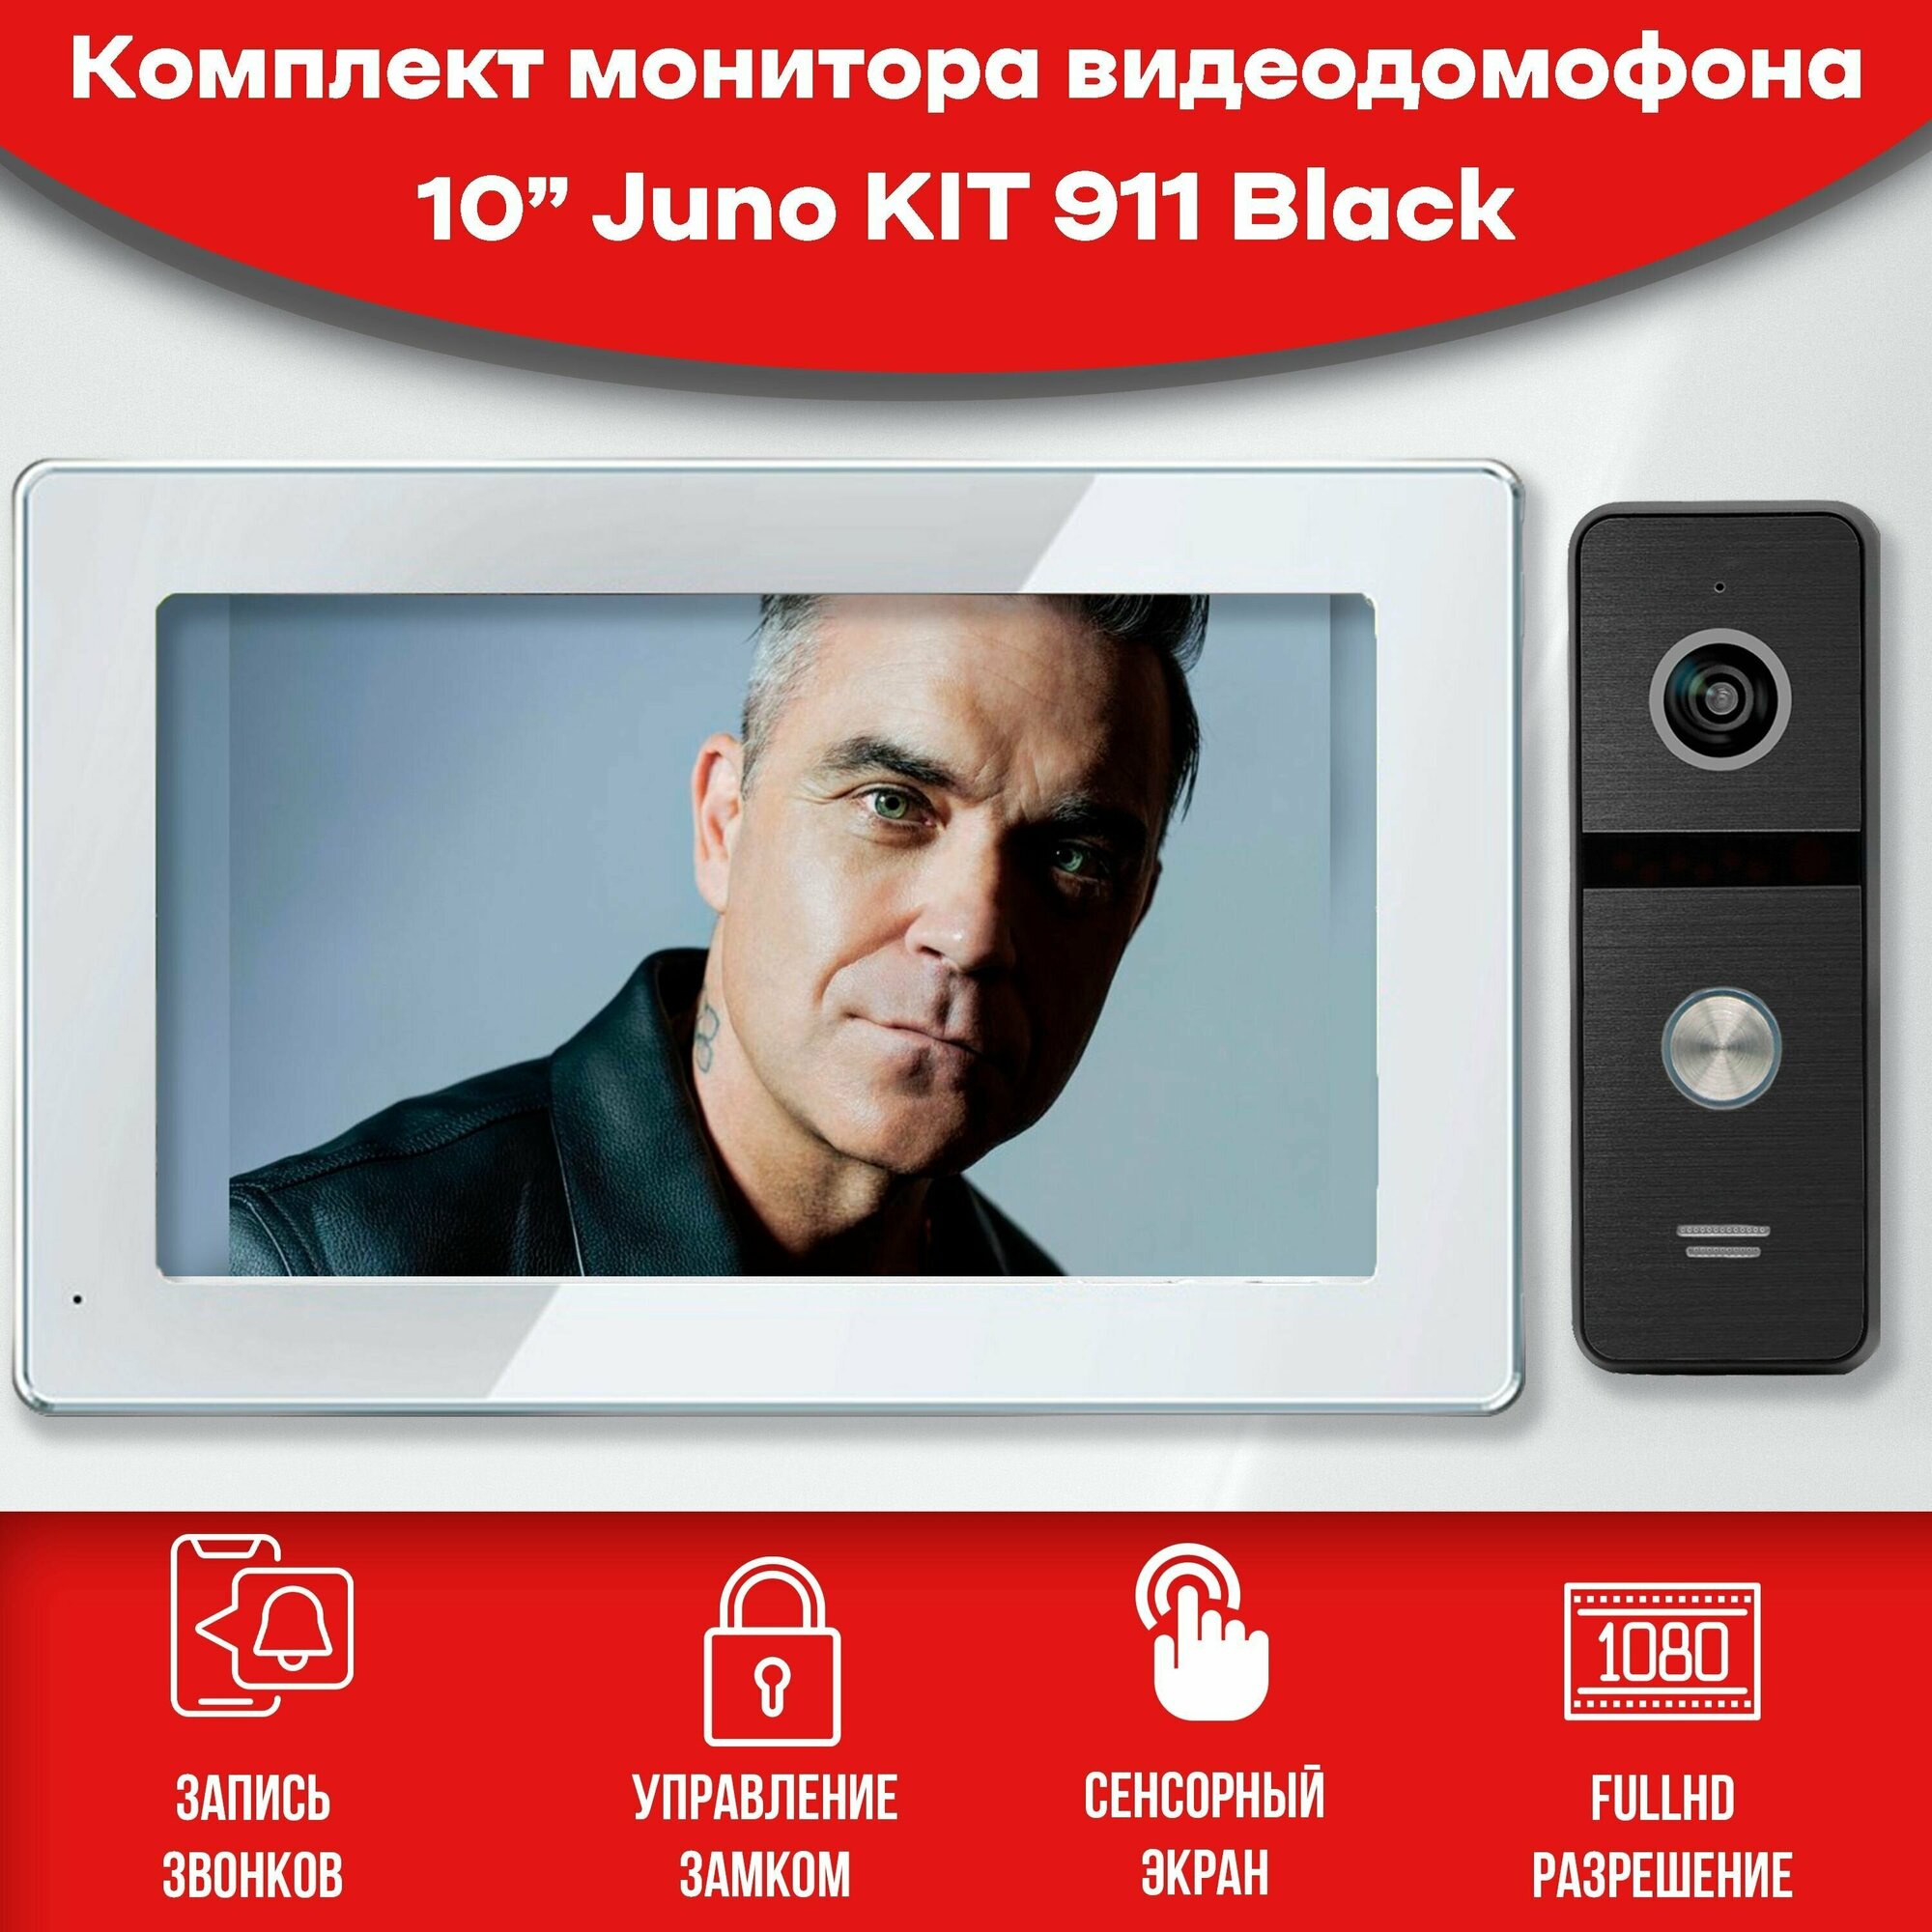 Комплект видеодомофона Juno White-KIT+вызывная панель(911bl) Full HD. Экран 10". Запись звонков и движения на SD-карту. Совместим с подъездным домофоном через модуль сопряжения.